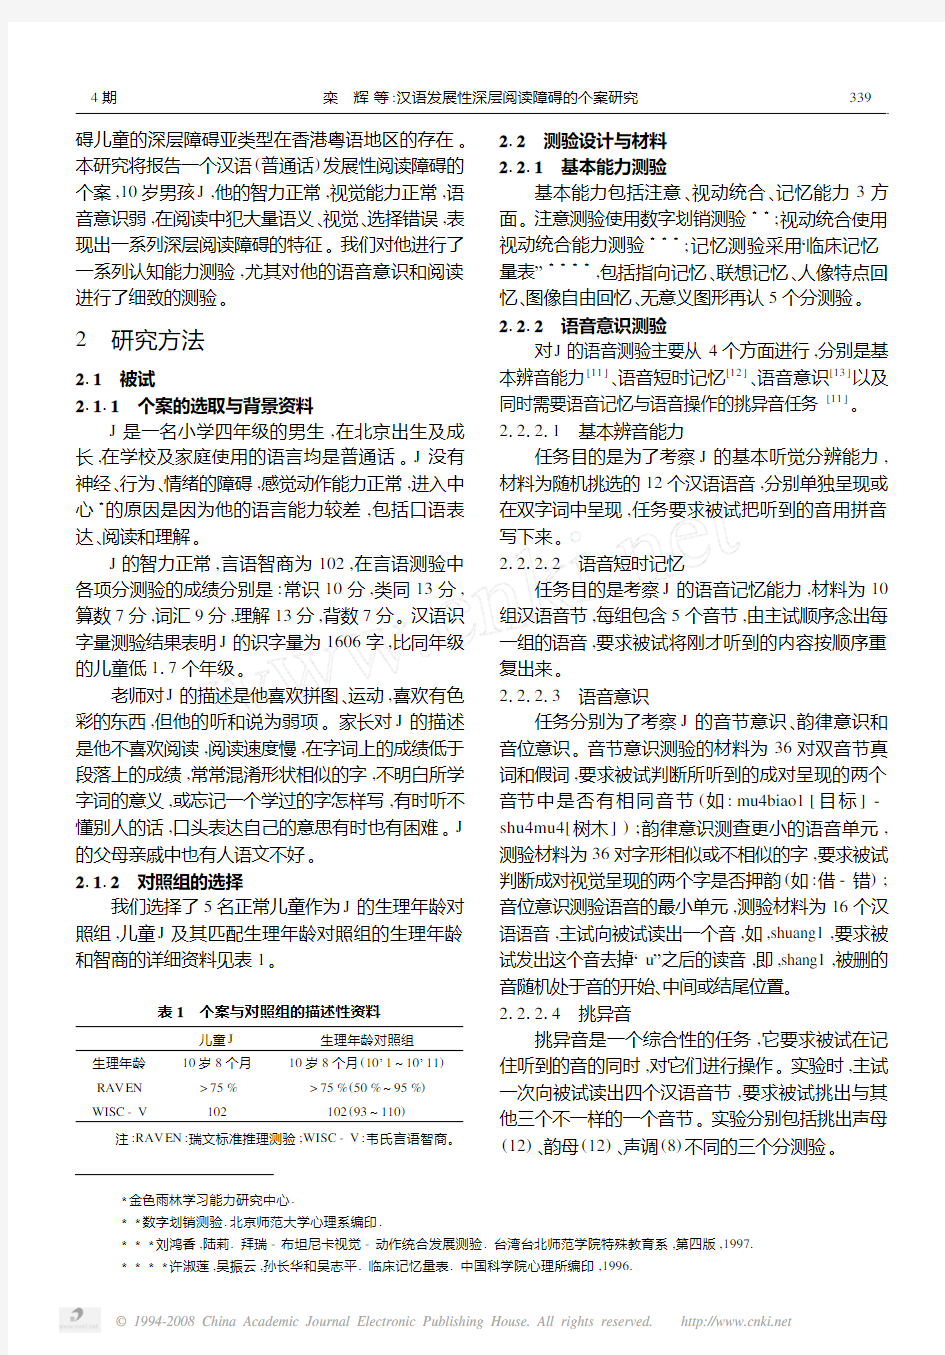 汉语发展性深层阅读障碍的个案研究